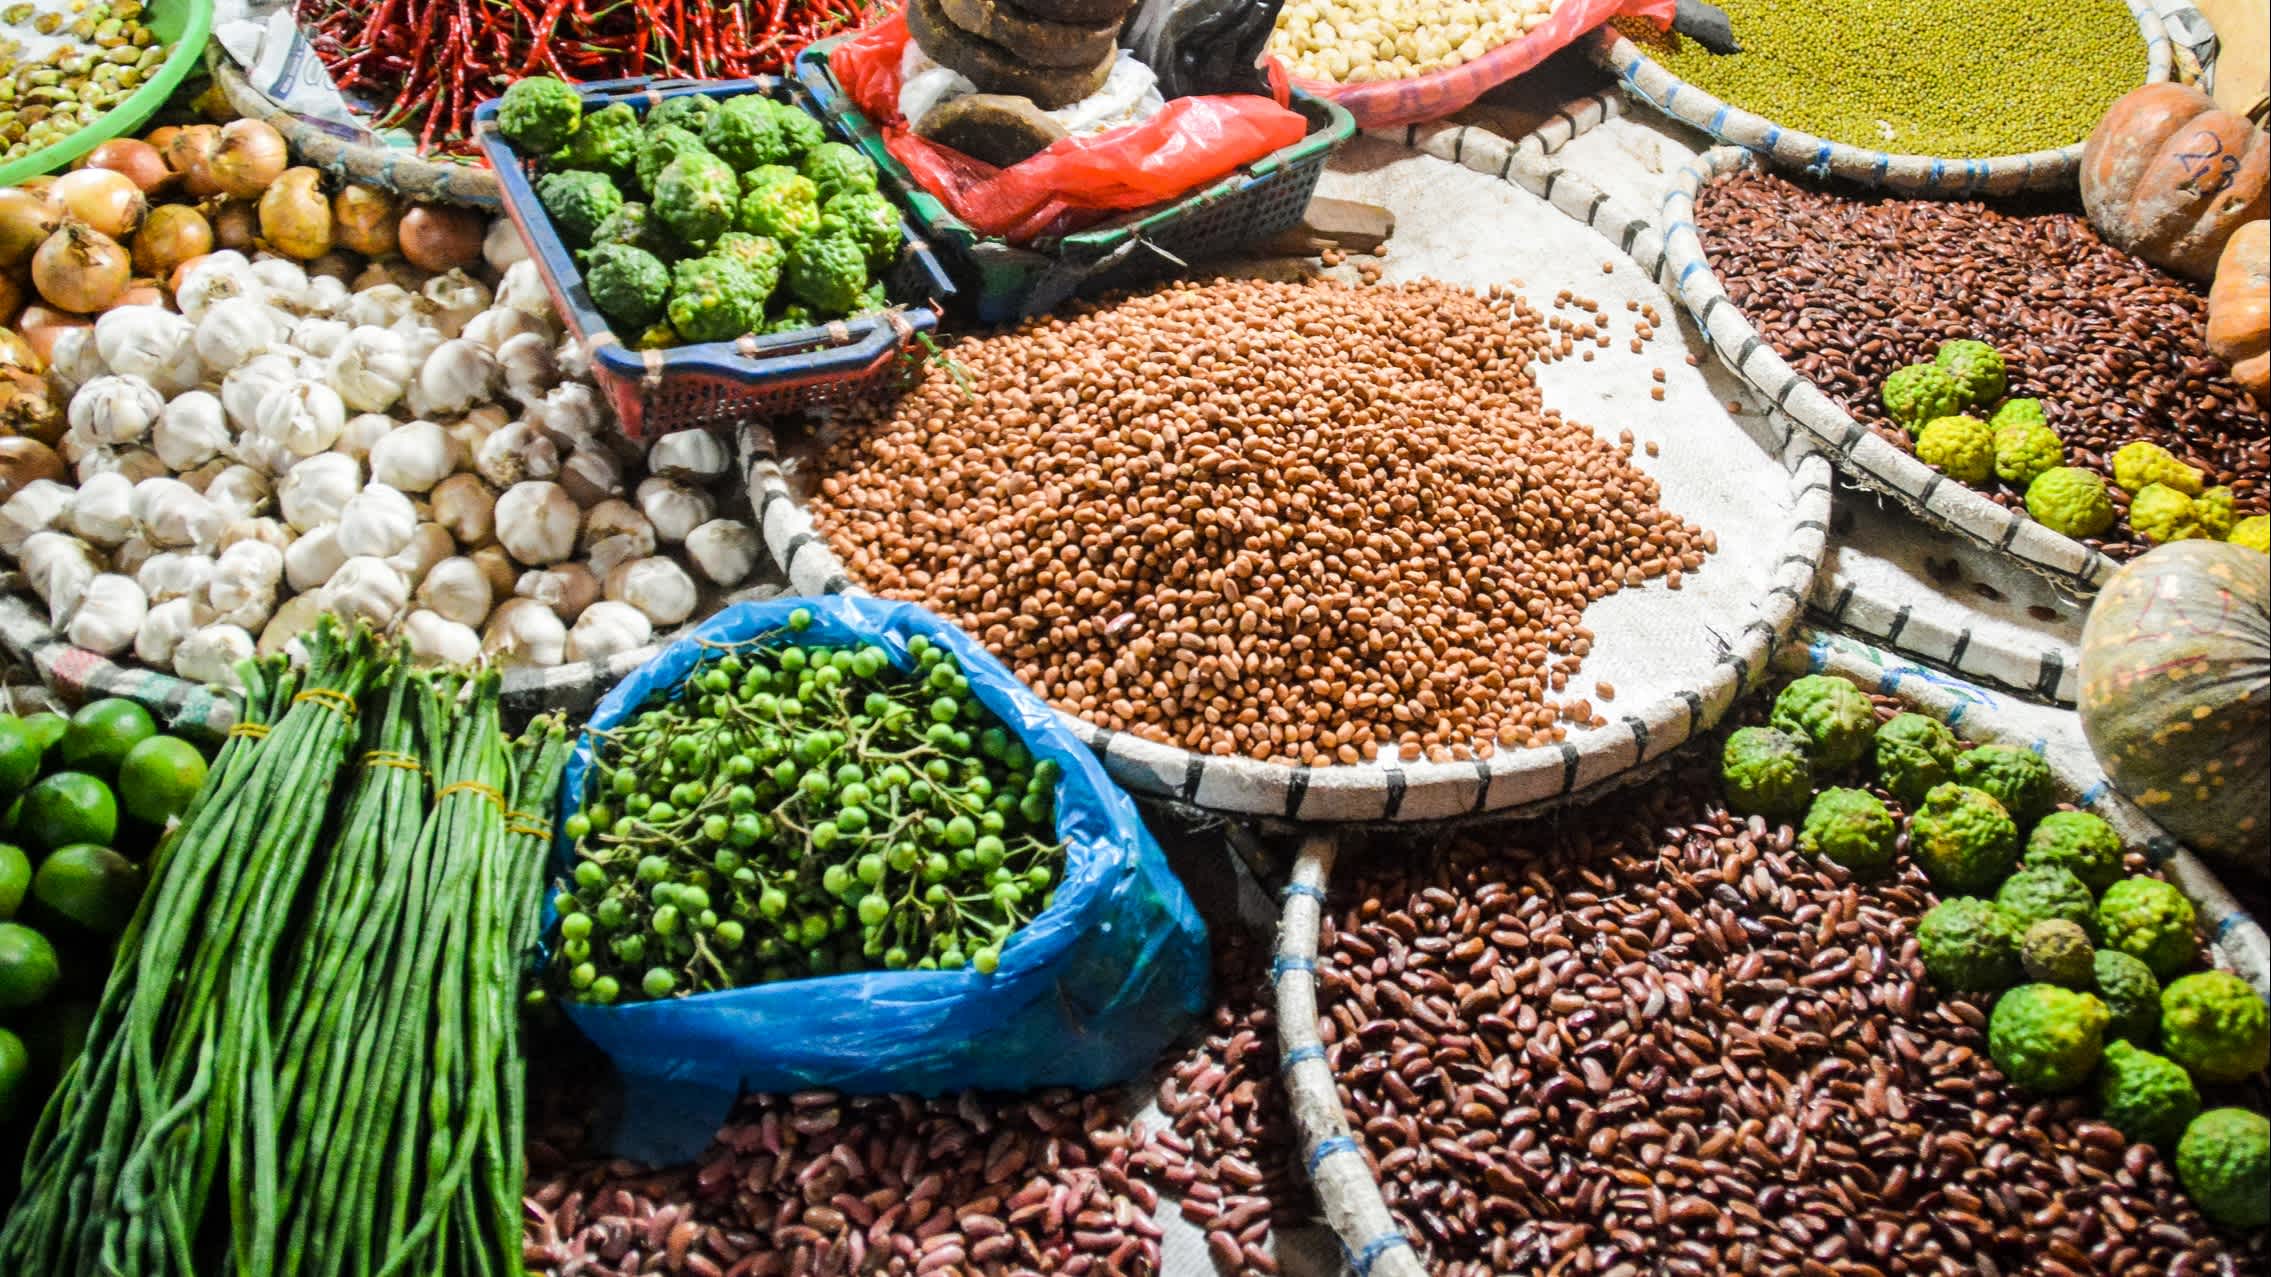 Gemüsemarkt in Indonesien